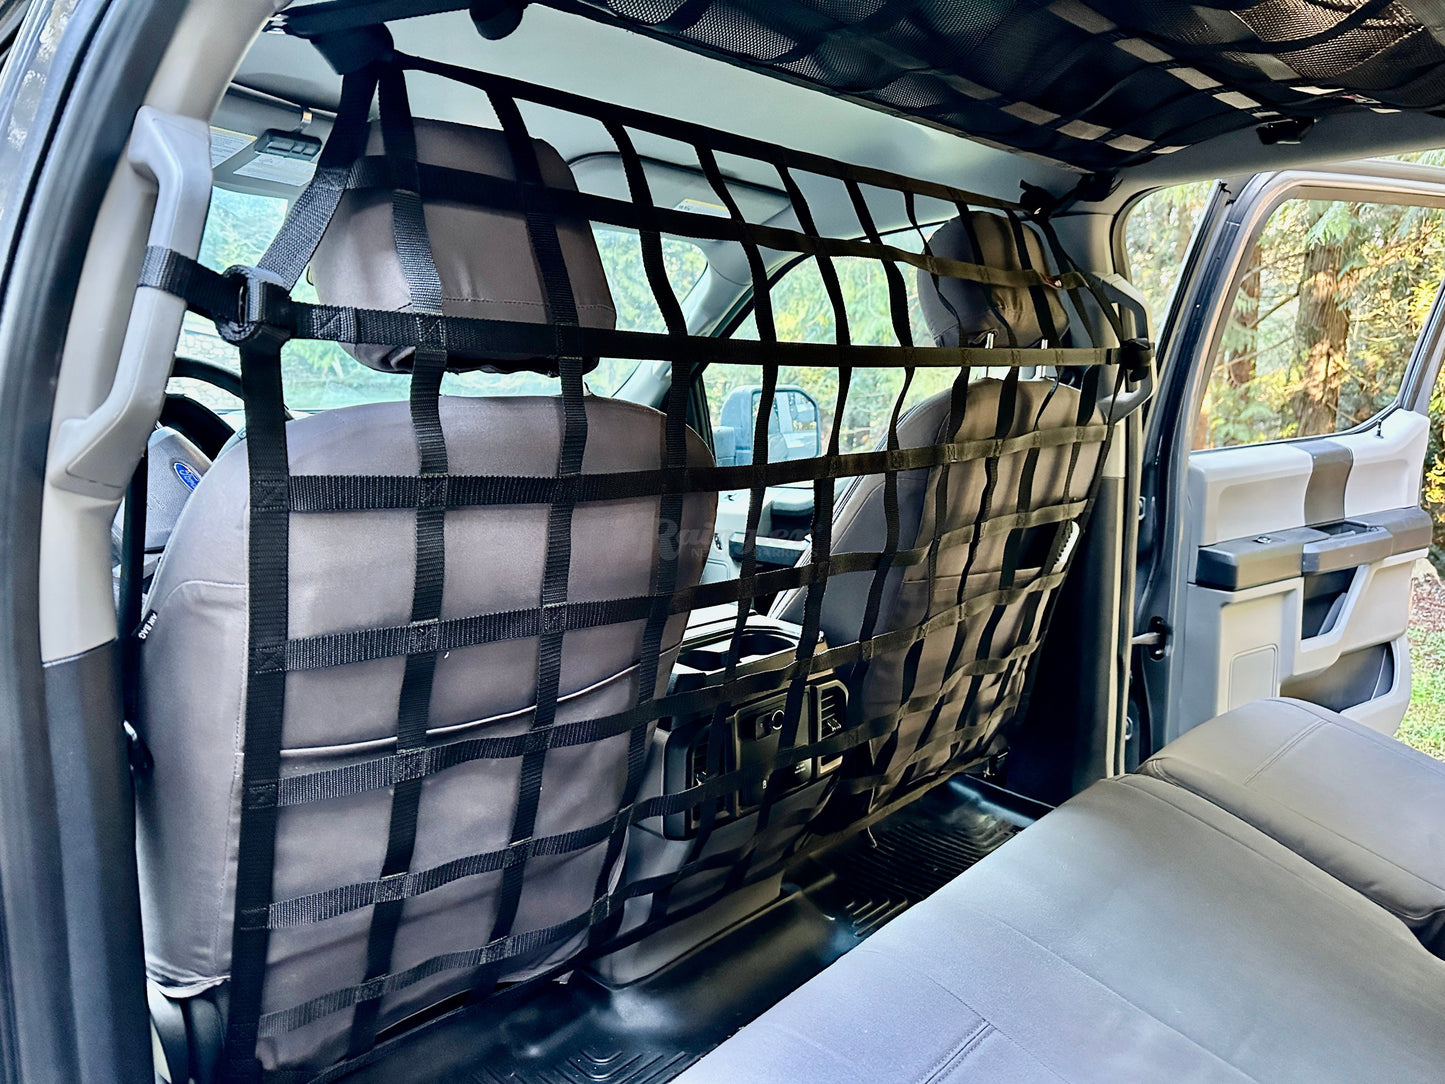 2015 - Newer Ford F150 / Raptor Regular Cab / Crew Cab Behind Front Seat Barrier Divider Net-Raingler